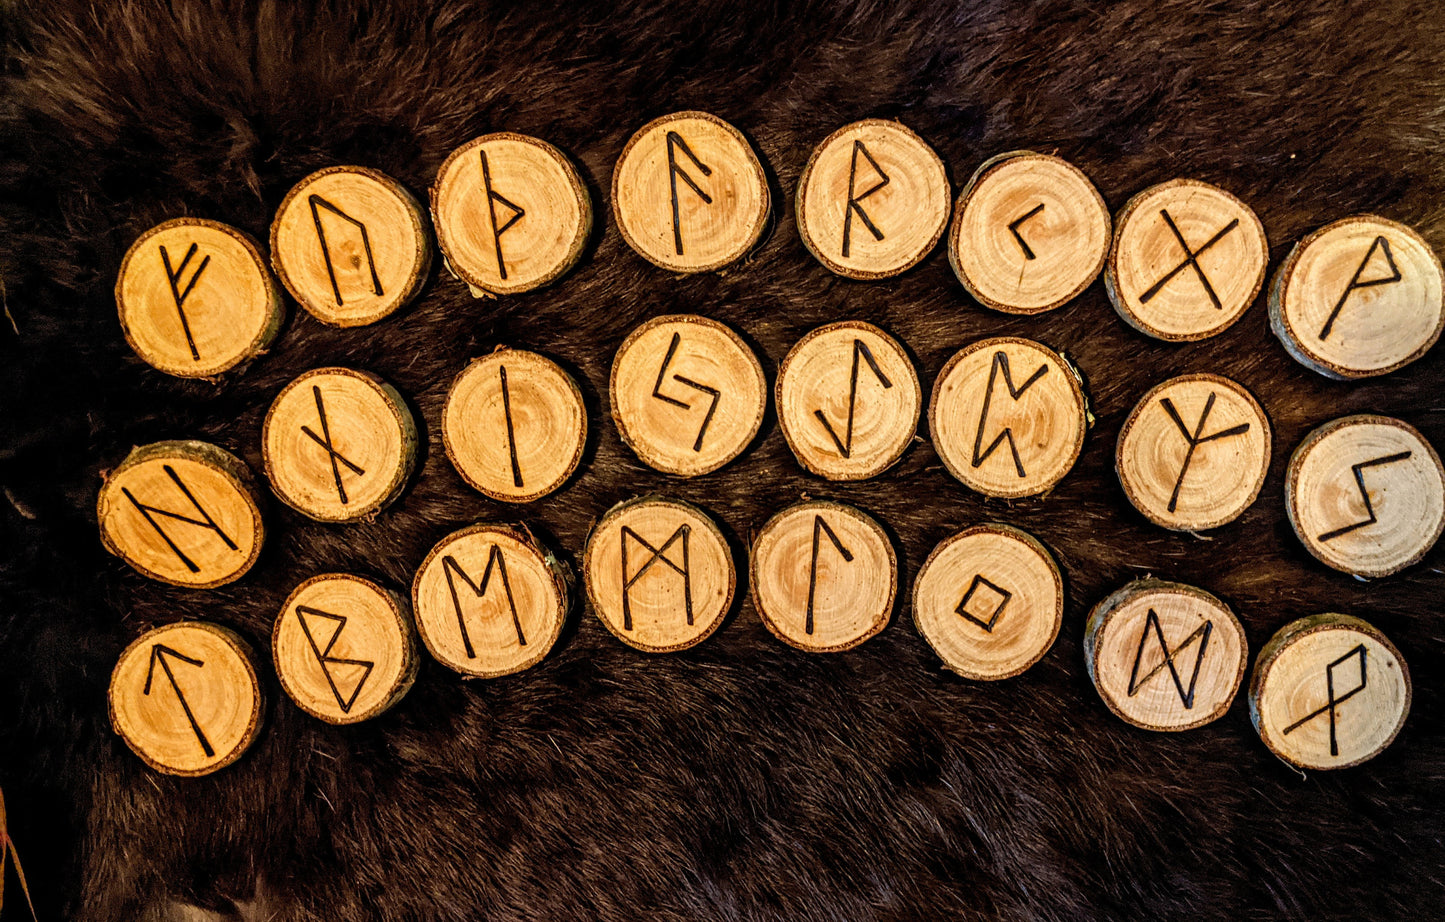 Black Rum Cherry Wood Rune Set Elder Futhark Viking Norse Runes Fruit Tree